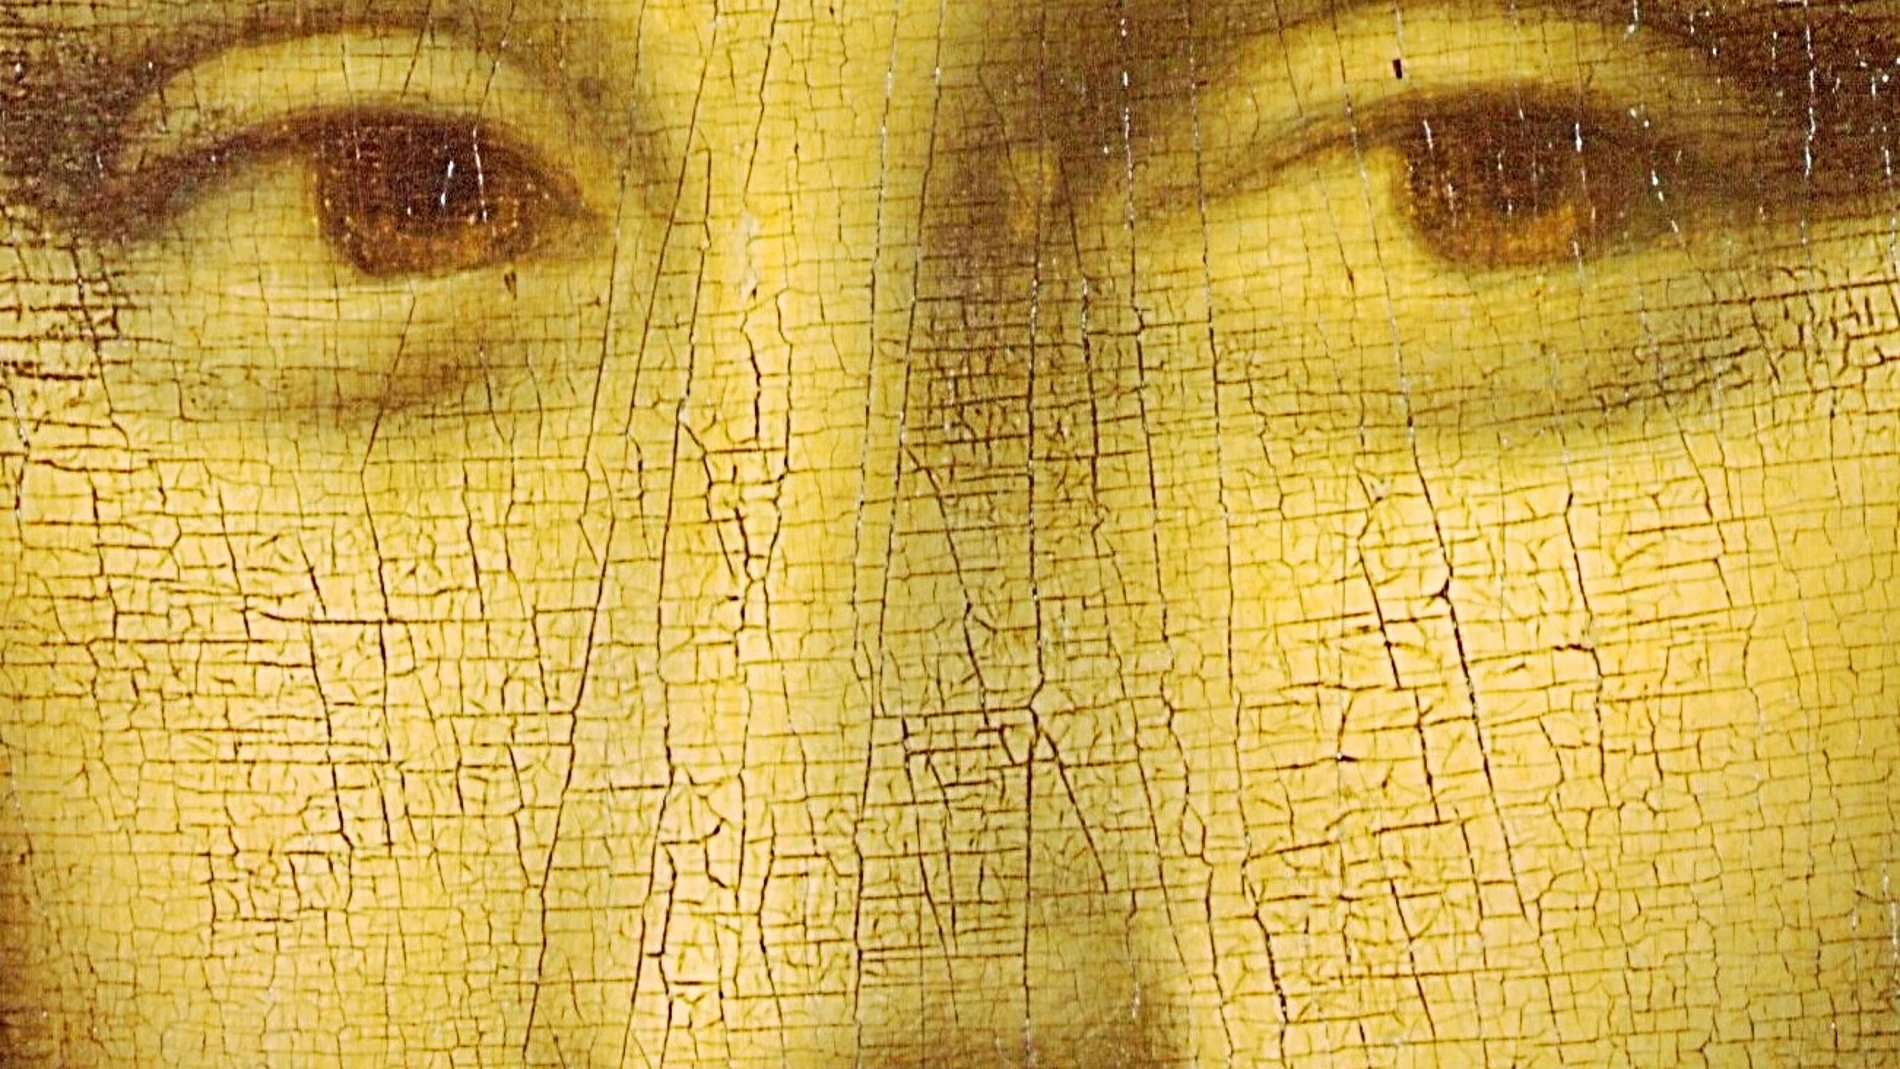 Unos científicos aseguran que la mirada «mágica» del lienzo es un cuento y que el «efecto “Mona Lisa”» no es más que un nombre inapropiado